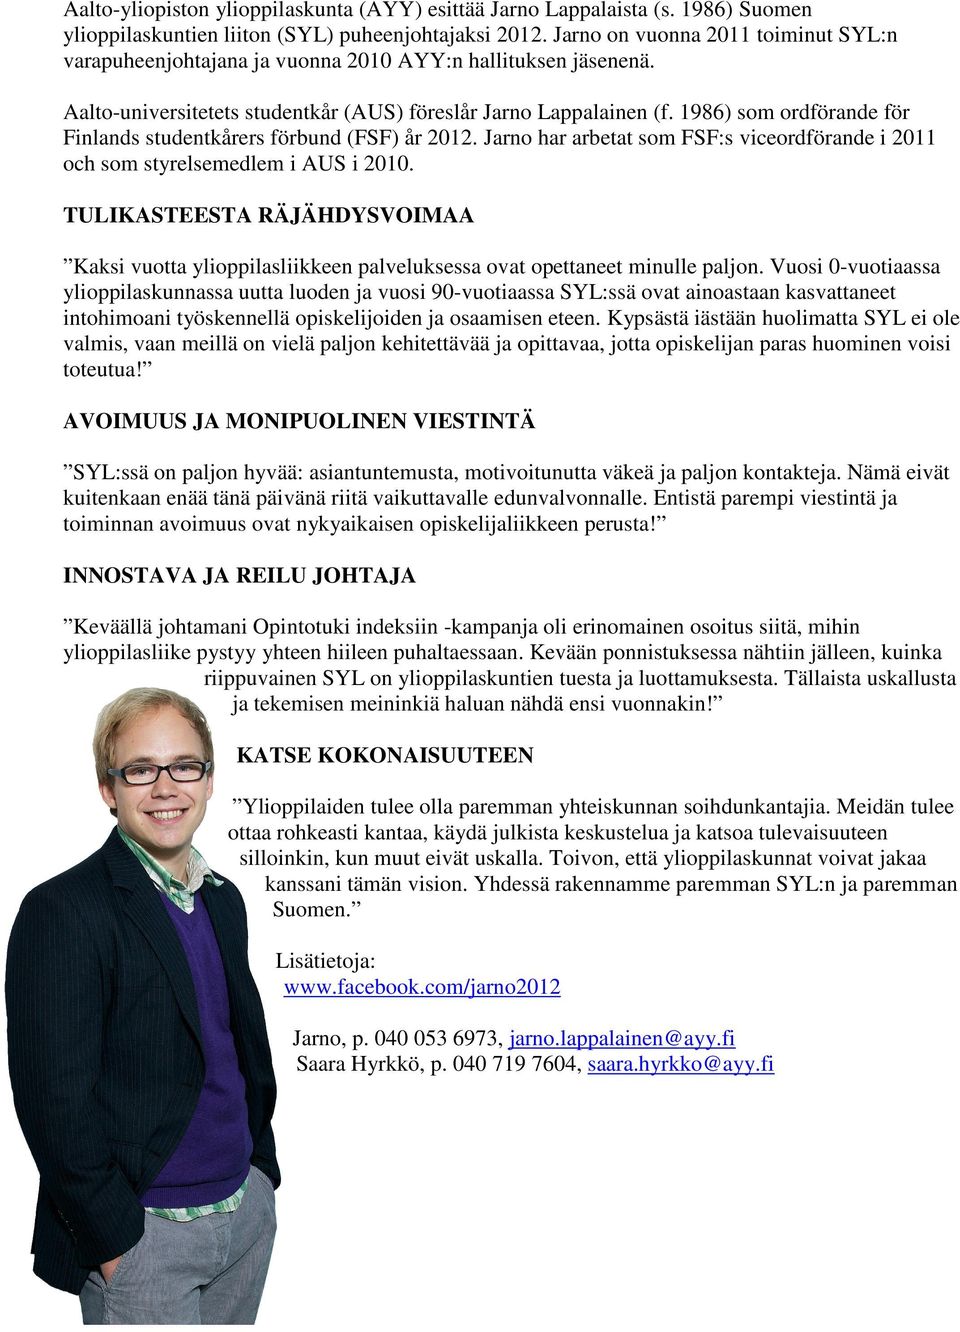 1986) som ordförande för Finlands studentkårers förbund (FSF) år 2012. Jarno har arbetat som FSF:s viceordförande i 2011 och som styrelsemedlem i AUS i 2010.